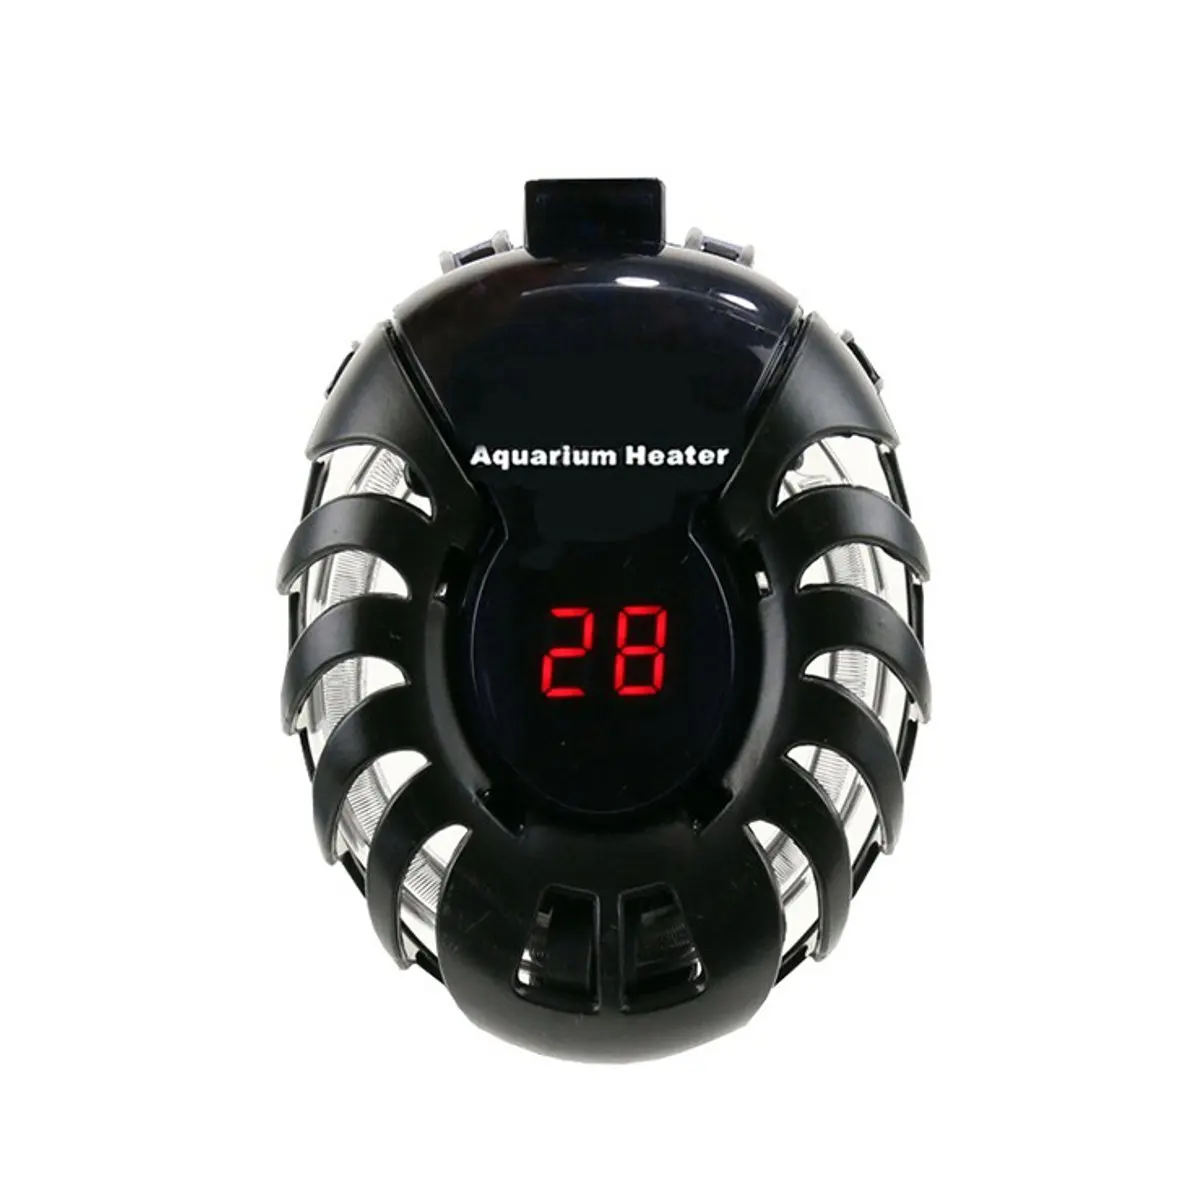 

25W/50W/75W/100W Aquarium Heater Mini Submersible Fish Tank Heater LED Digital Display Smart Thermostat Constant Heating Rod